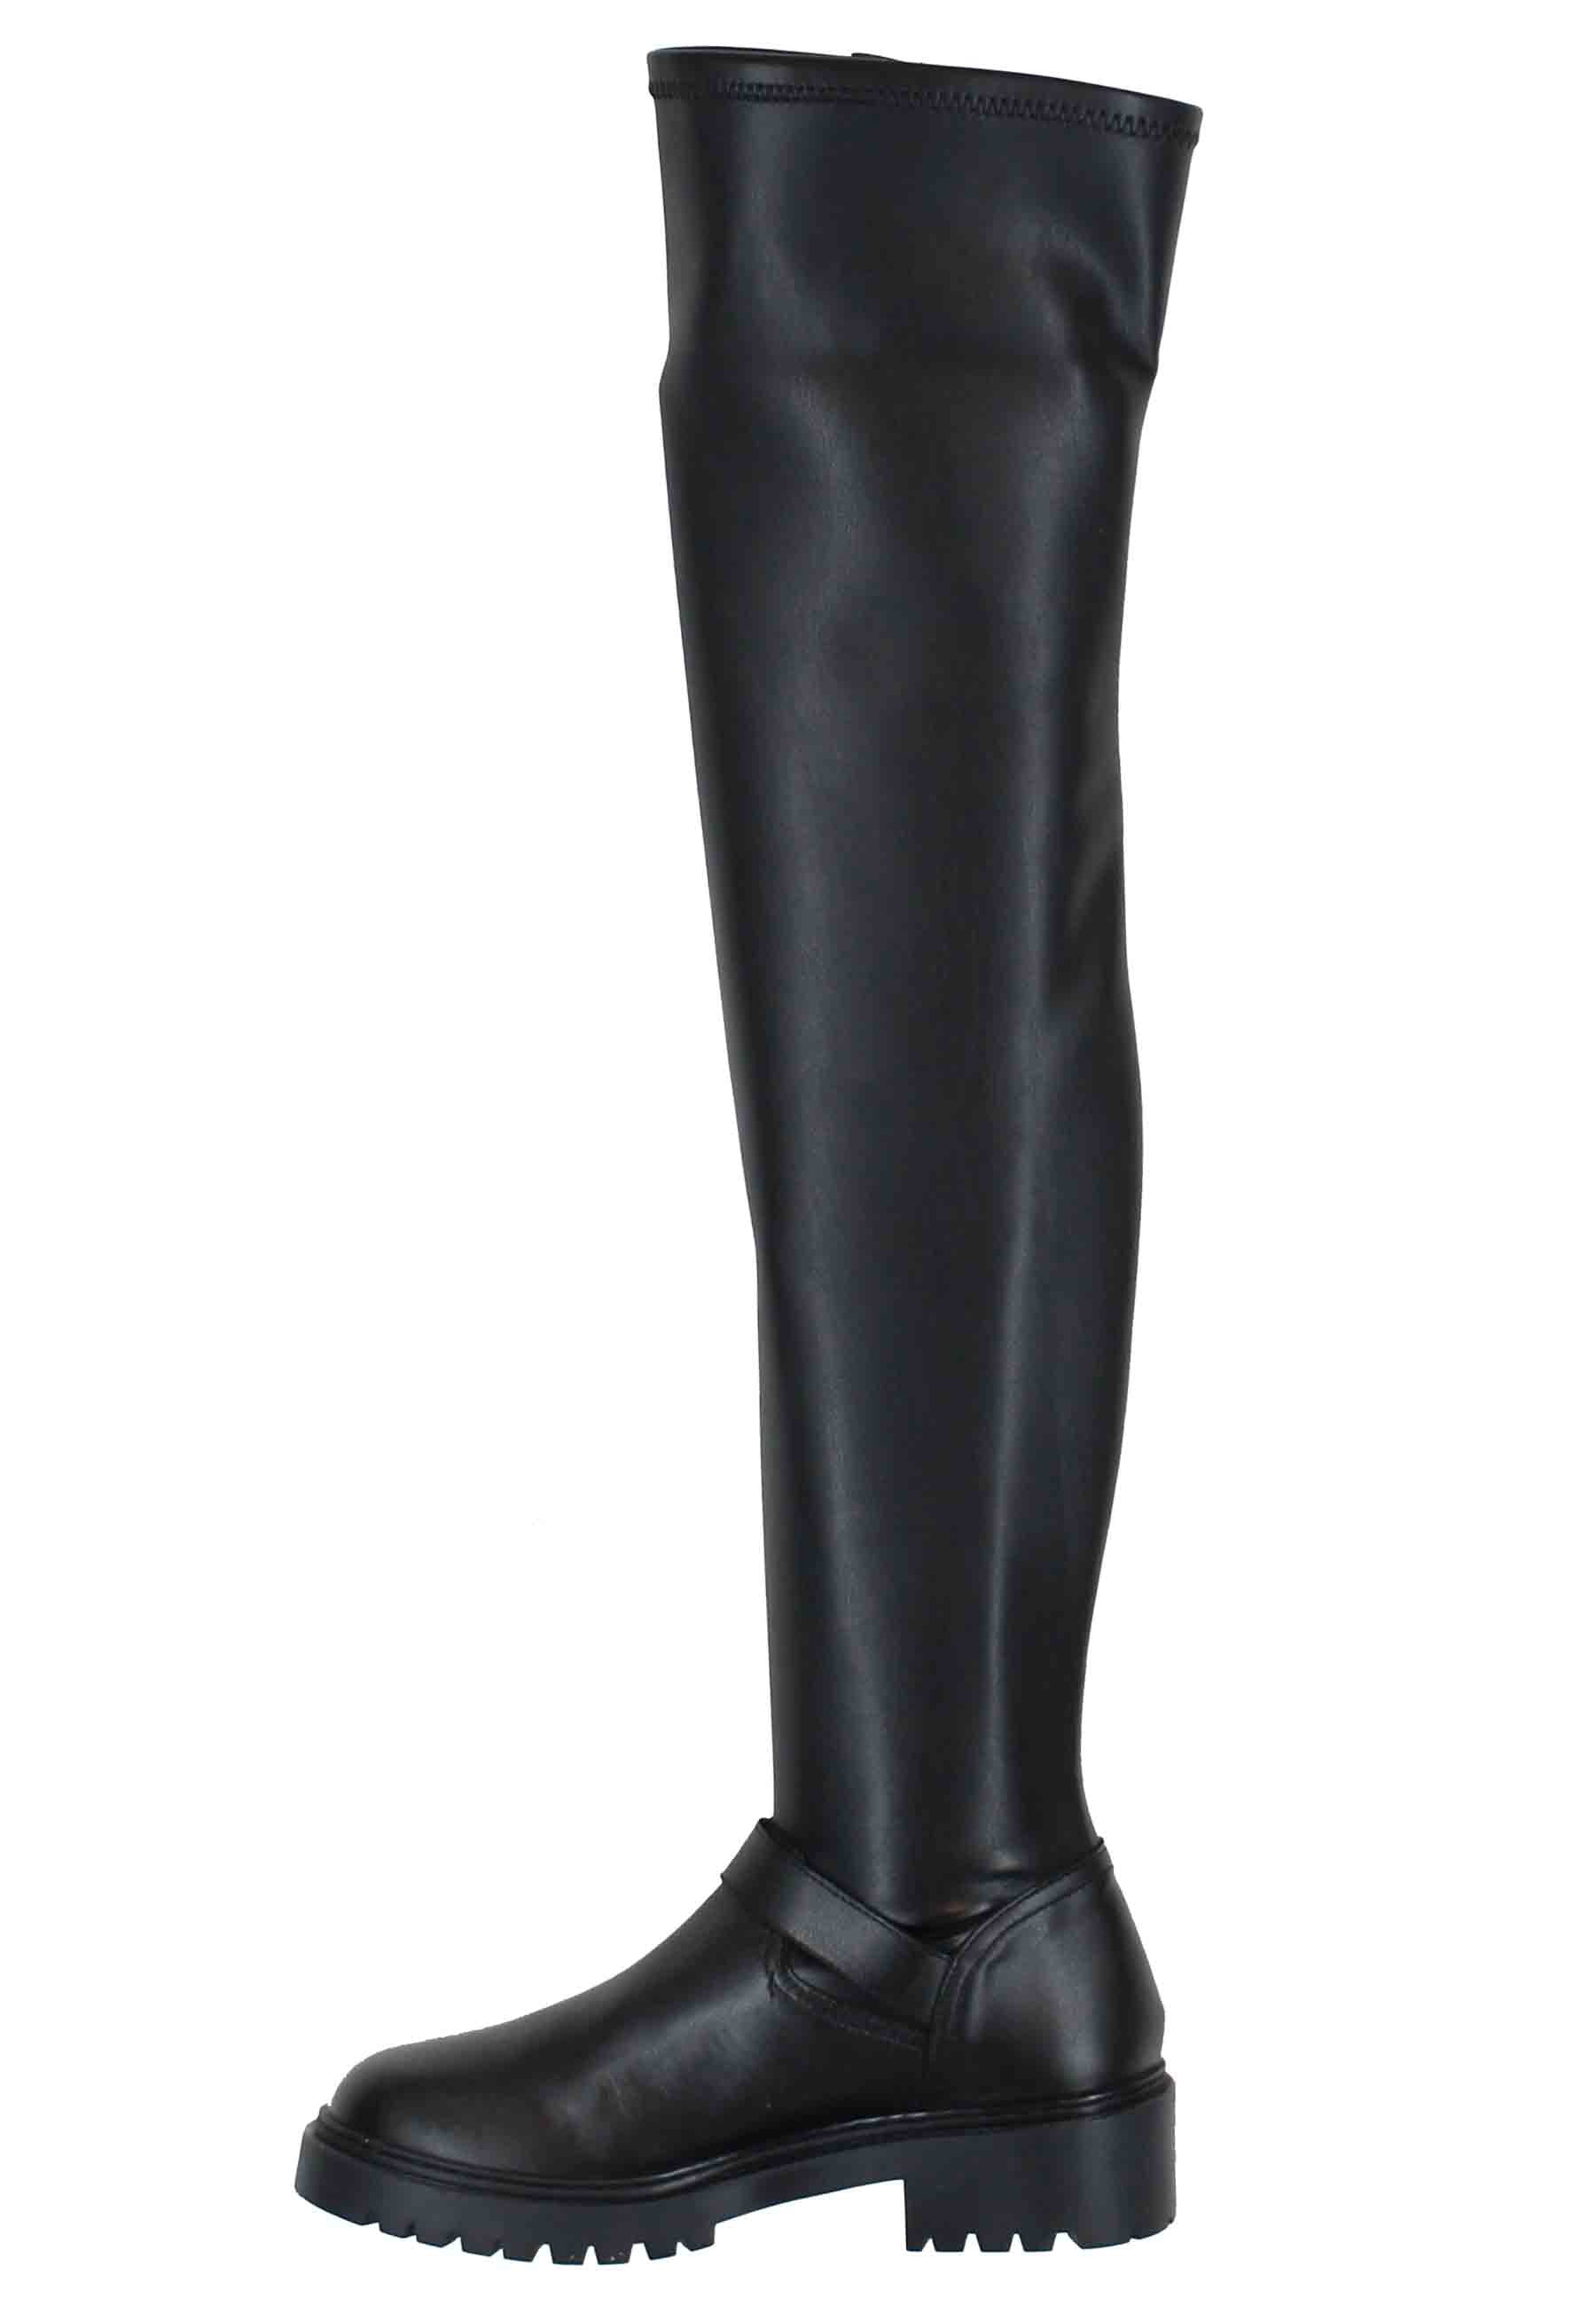 Stivali con gambale alto donna in pelle nera e suola carrarmato